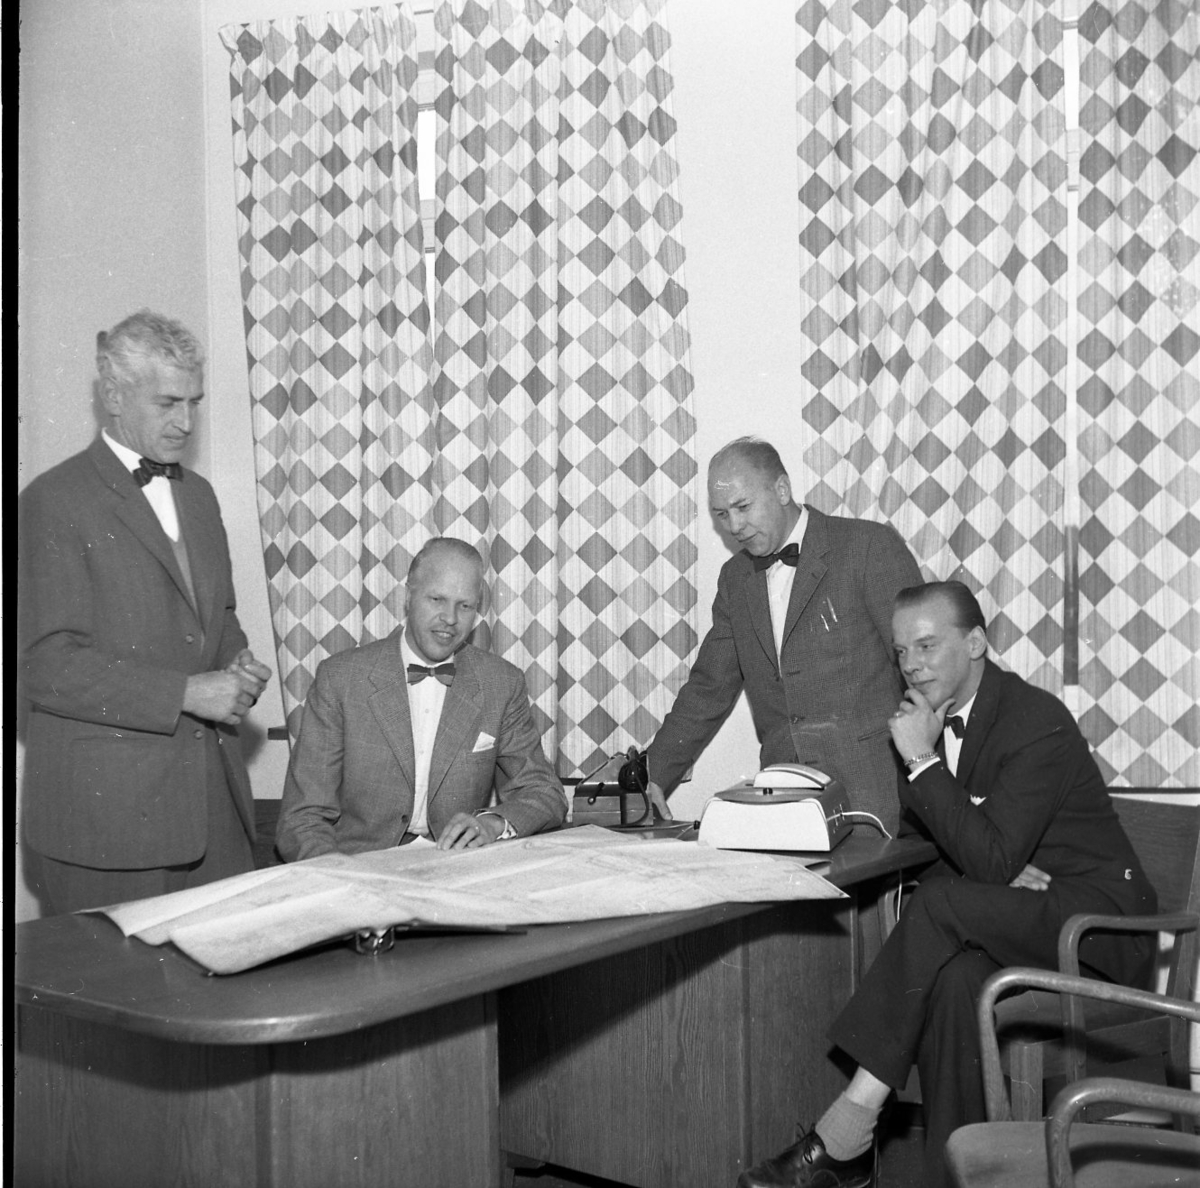 Fyra män samlade runt ett bord där det sannolikt ligger en ritning. Man befinner sig sannolikt på Rifa-fabriken. Fönsterna är fördragna med rutmönstrade gardiner. 
Från vänster: K Mörner, T Skytt, möjligen L Almén och möjligen B Arding